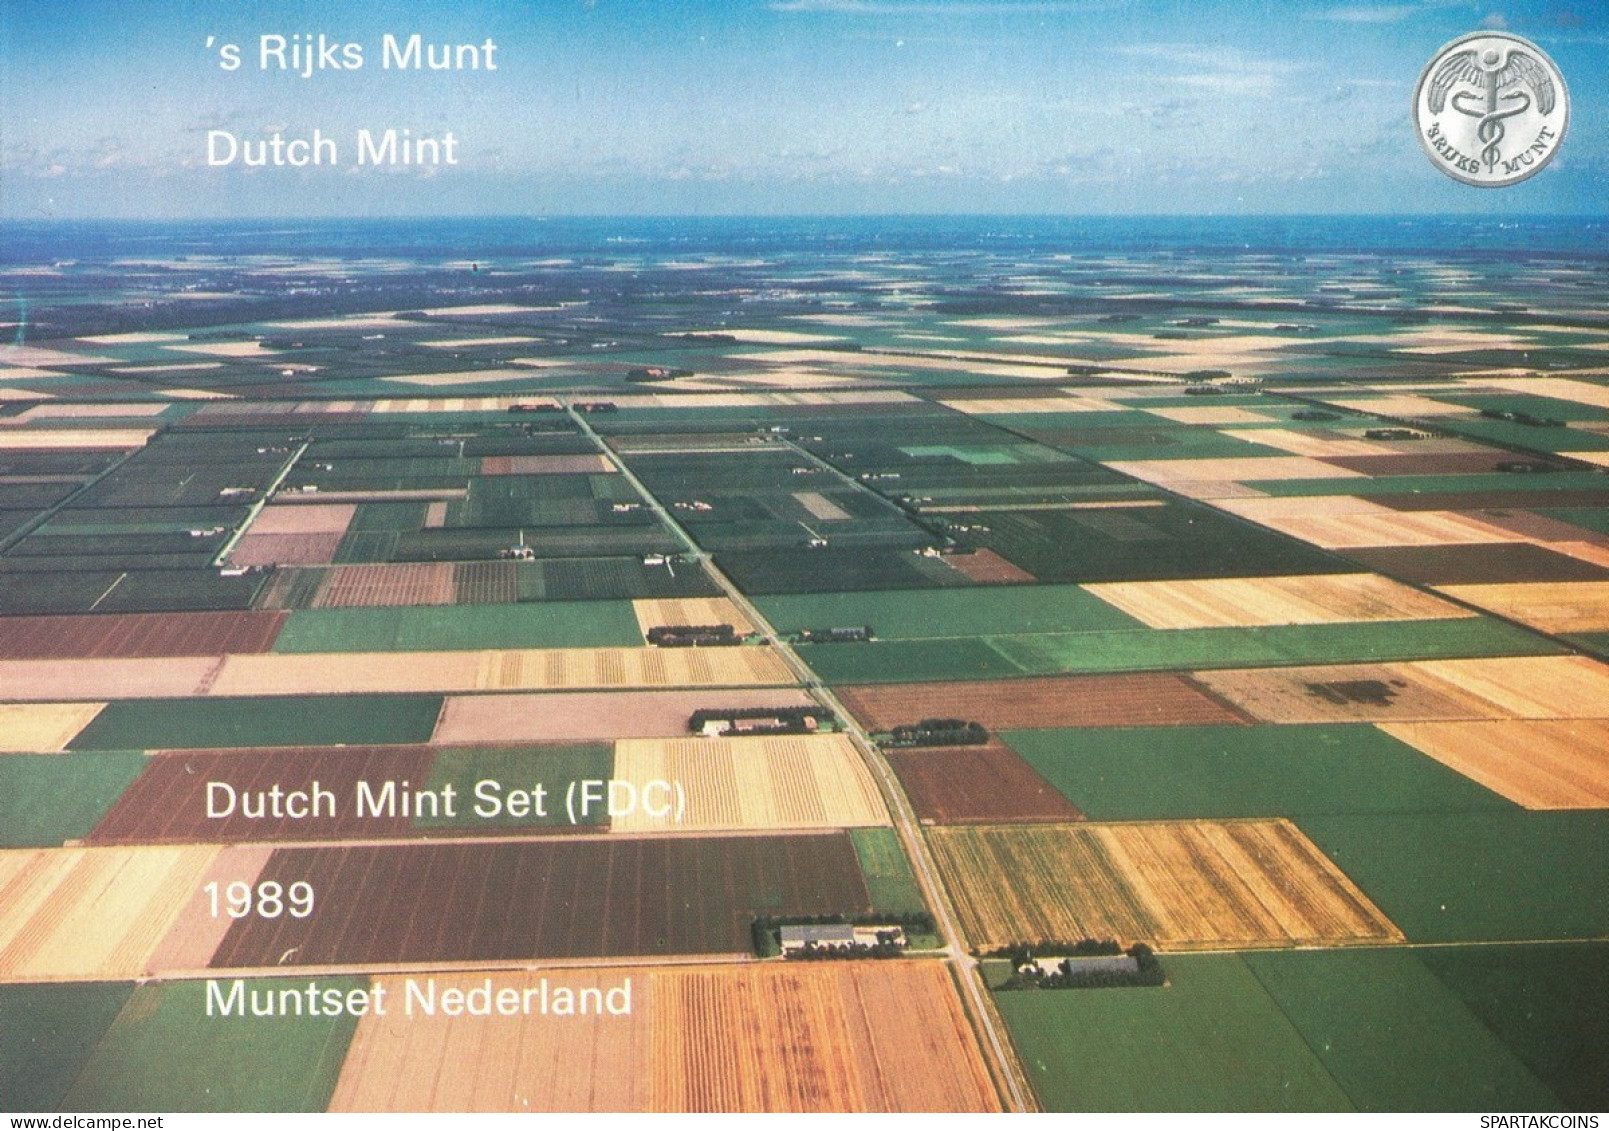 NIEDERLANDE NETHERLANDS 1989 MINT SET 6 Münze + MEDAL #SET1107.7.D.A - Nieuwe Sets & Testkits